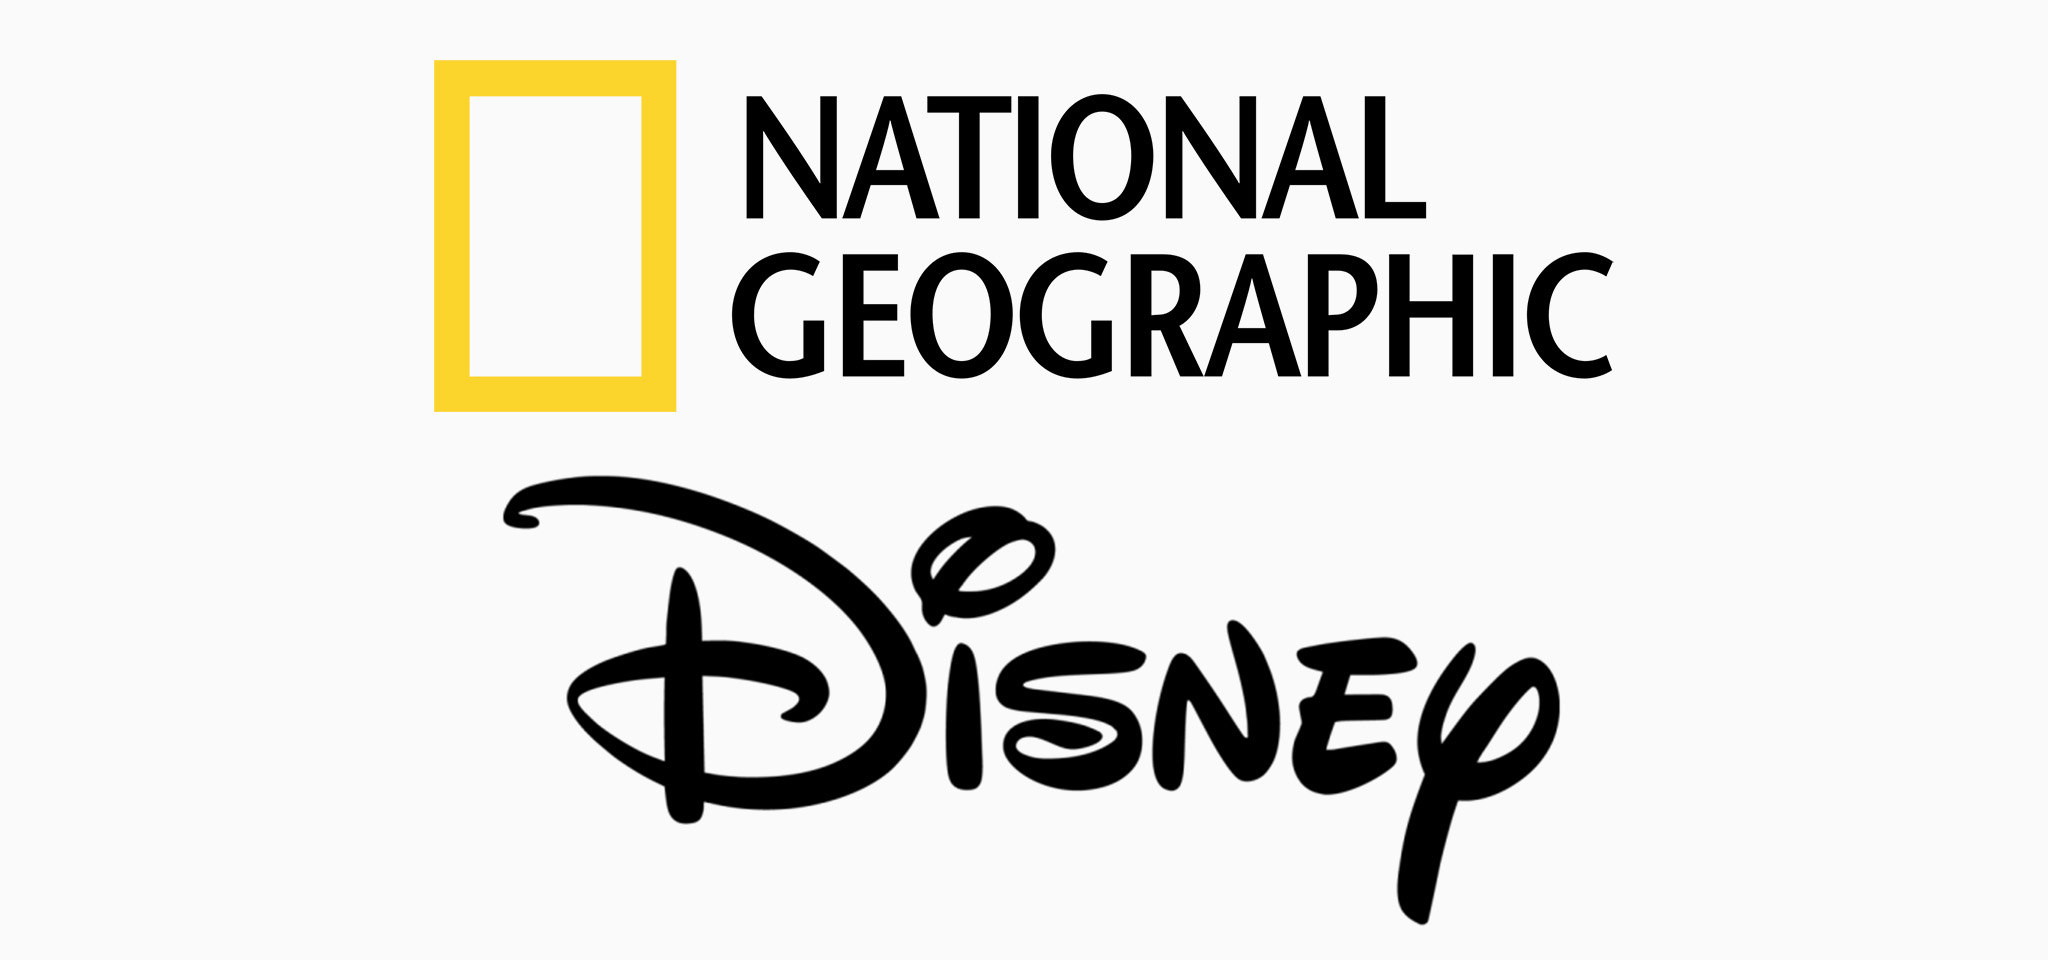 Disney kiểm soát National Geographic, có thể sẽ thay đổi về chính sách?